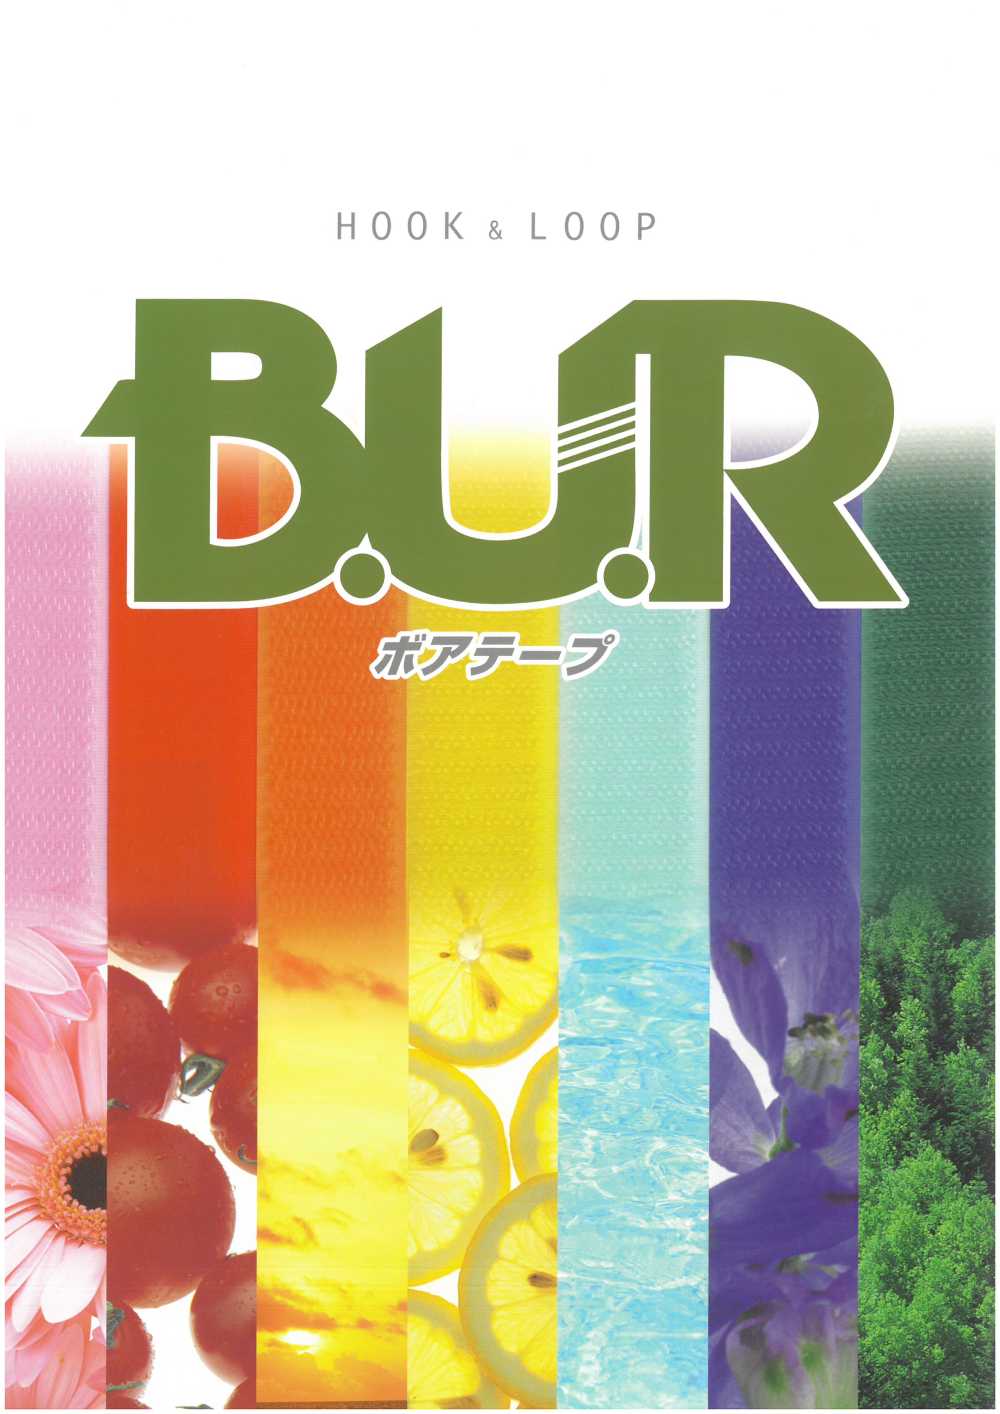 JBL Boa Tape Hook And Loop Hook And Loop B Side (Loop Type) Nylon Normal Type For Sewing[Zipper] B.U.R.